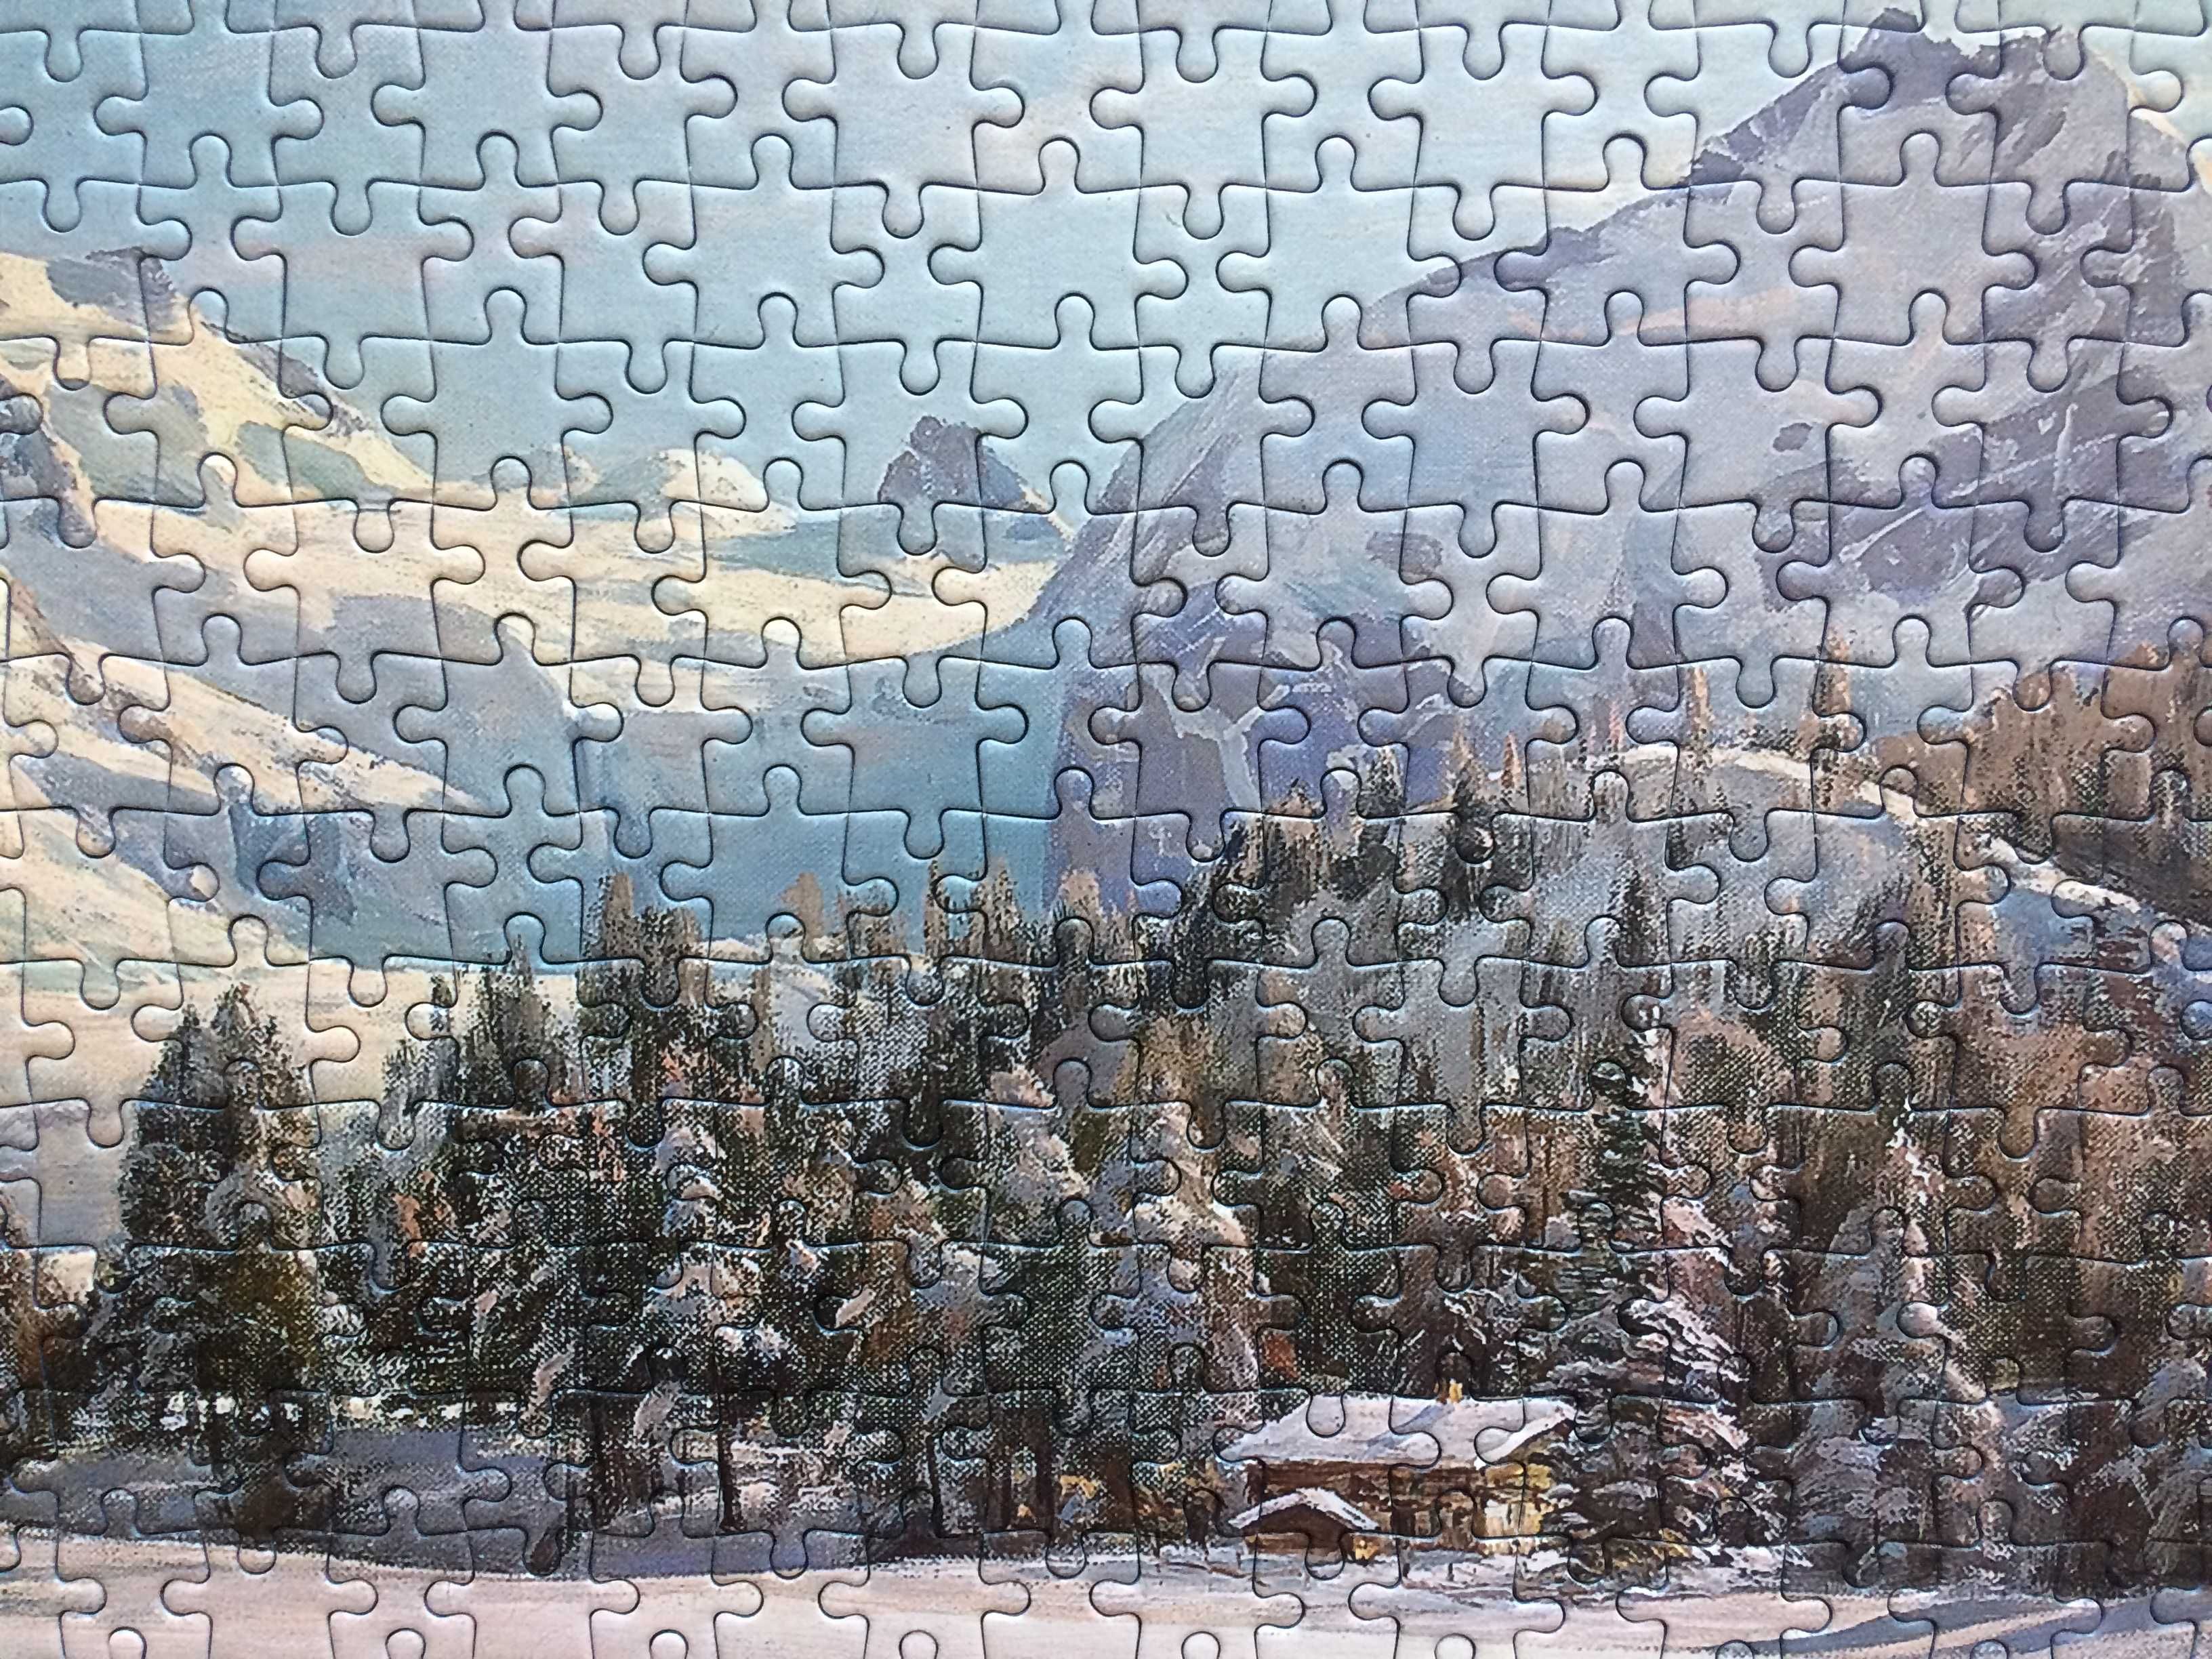 Puzzle Winter Landscape, P M Monsted, D-Toys, 1000